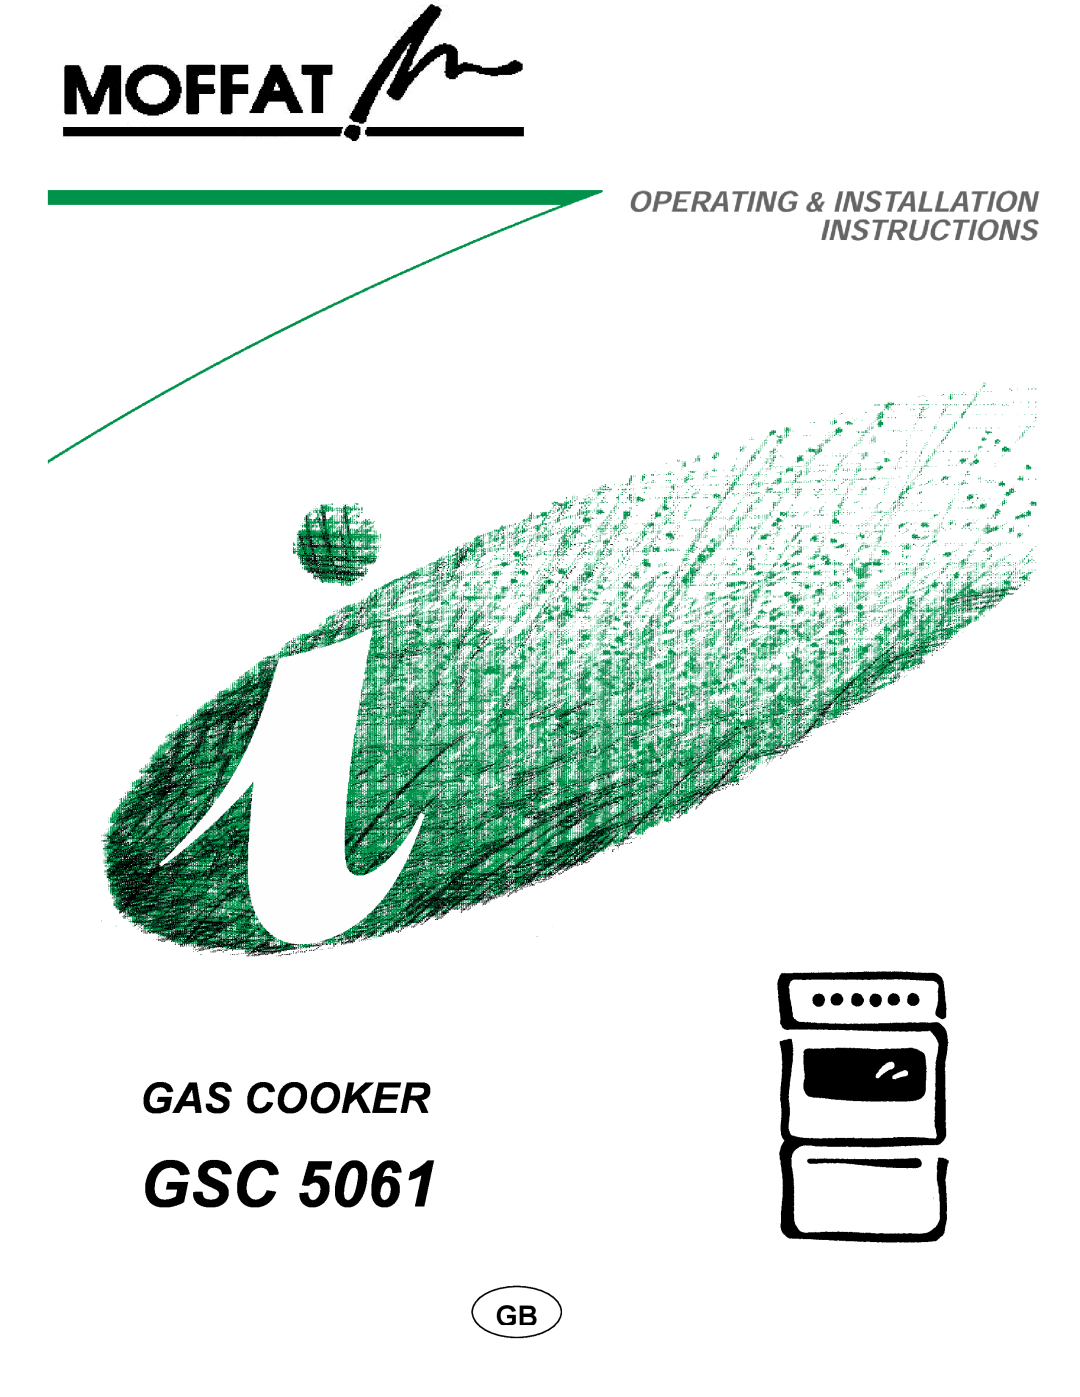 Moffat GSC 5061 manual Gas Cooker 